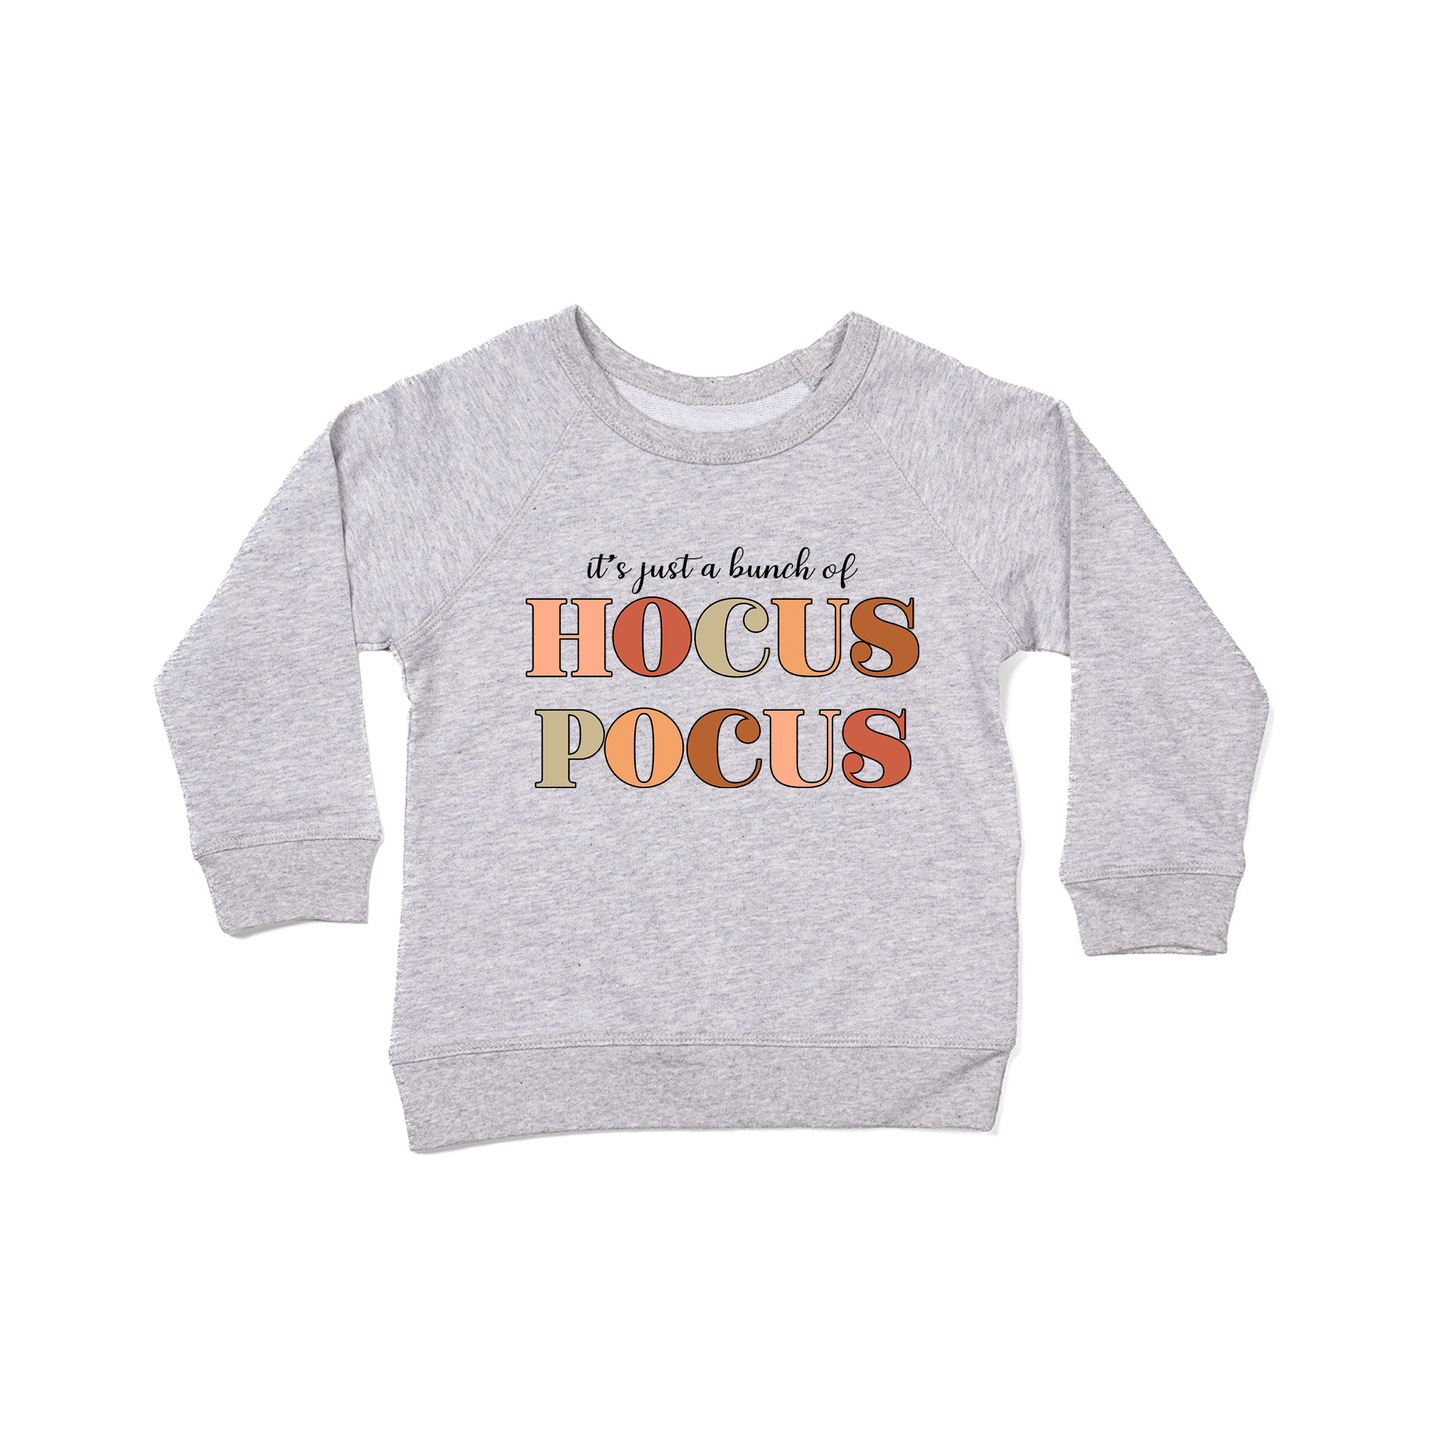 It's Just A Bunch of Hocus Pocus (Black) - Kids Sweatshirt (Heather Gray)